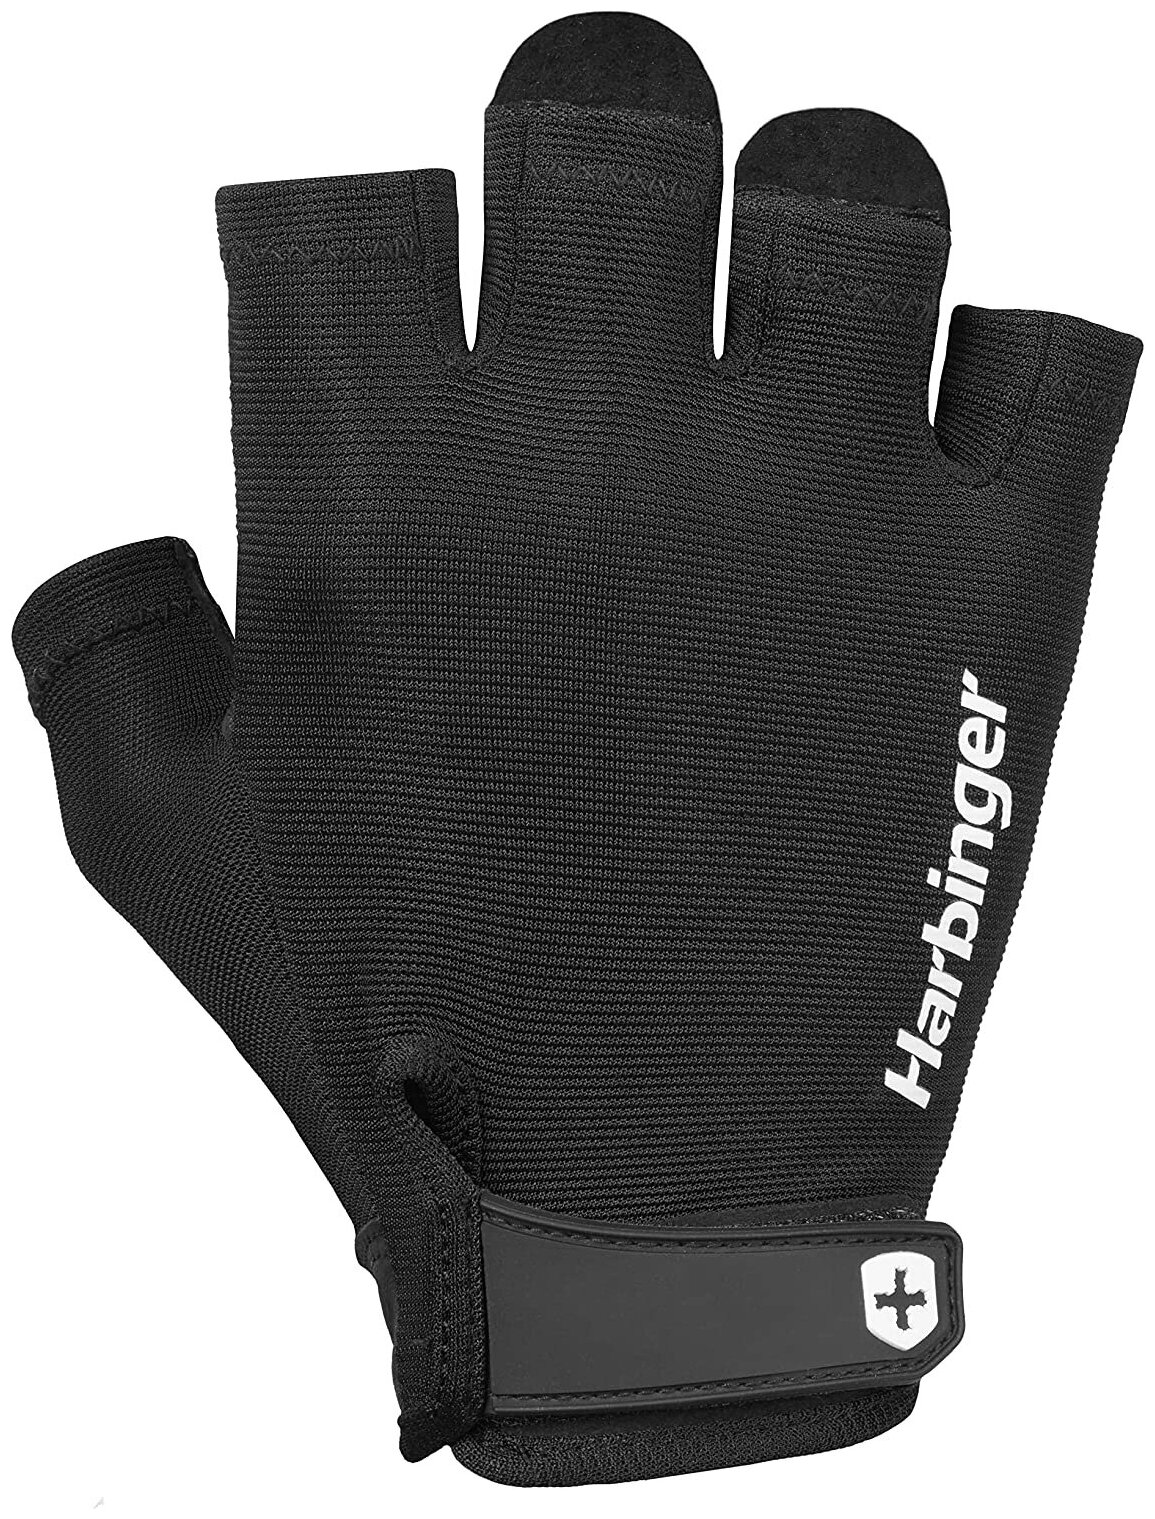 Harbinger Power Gloves, размер XL